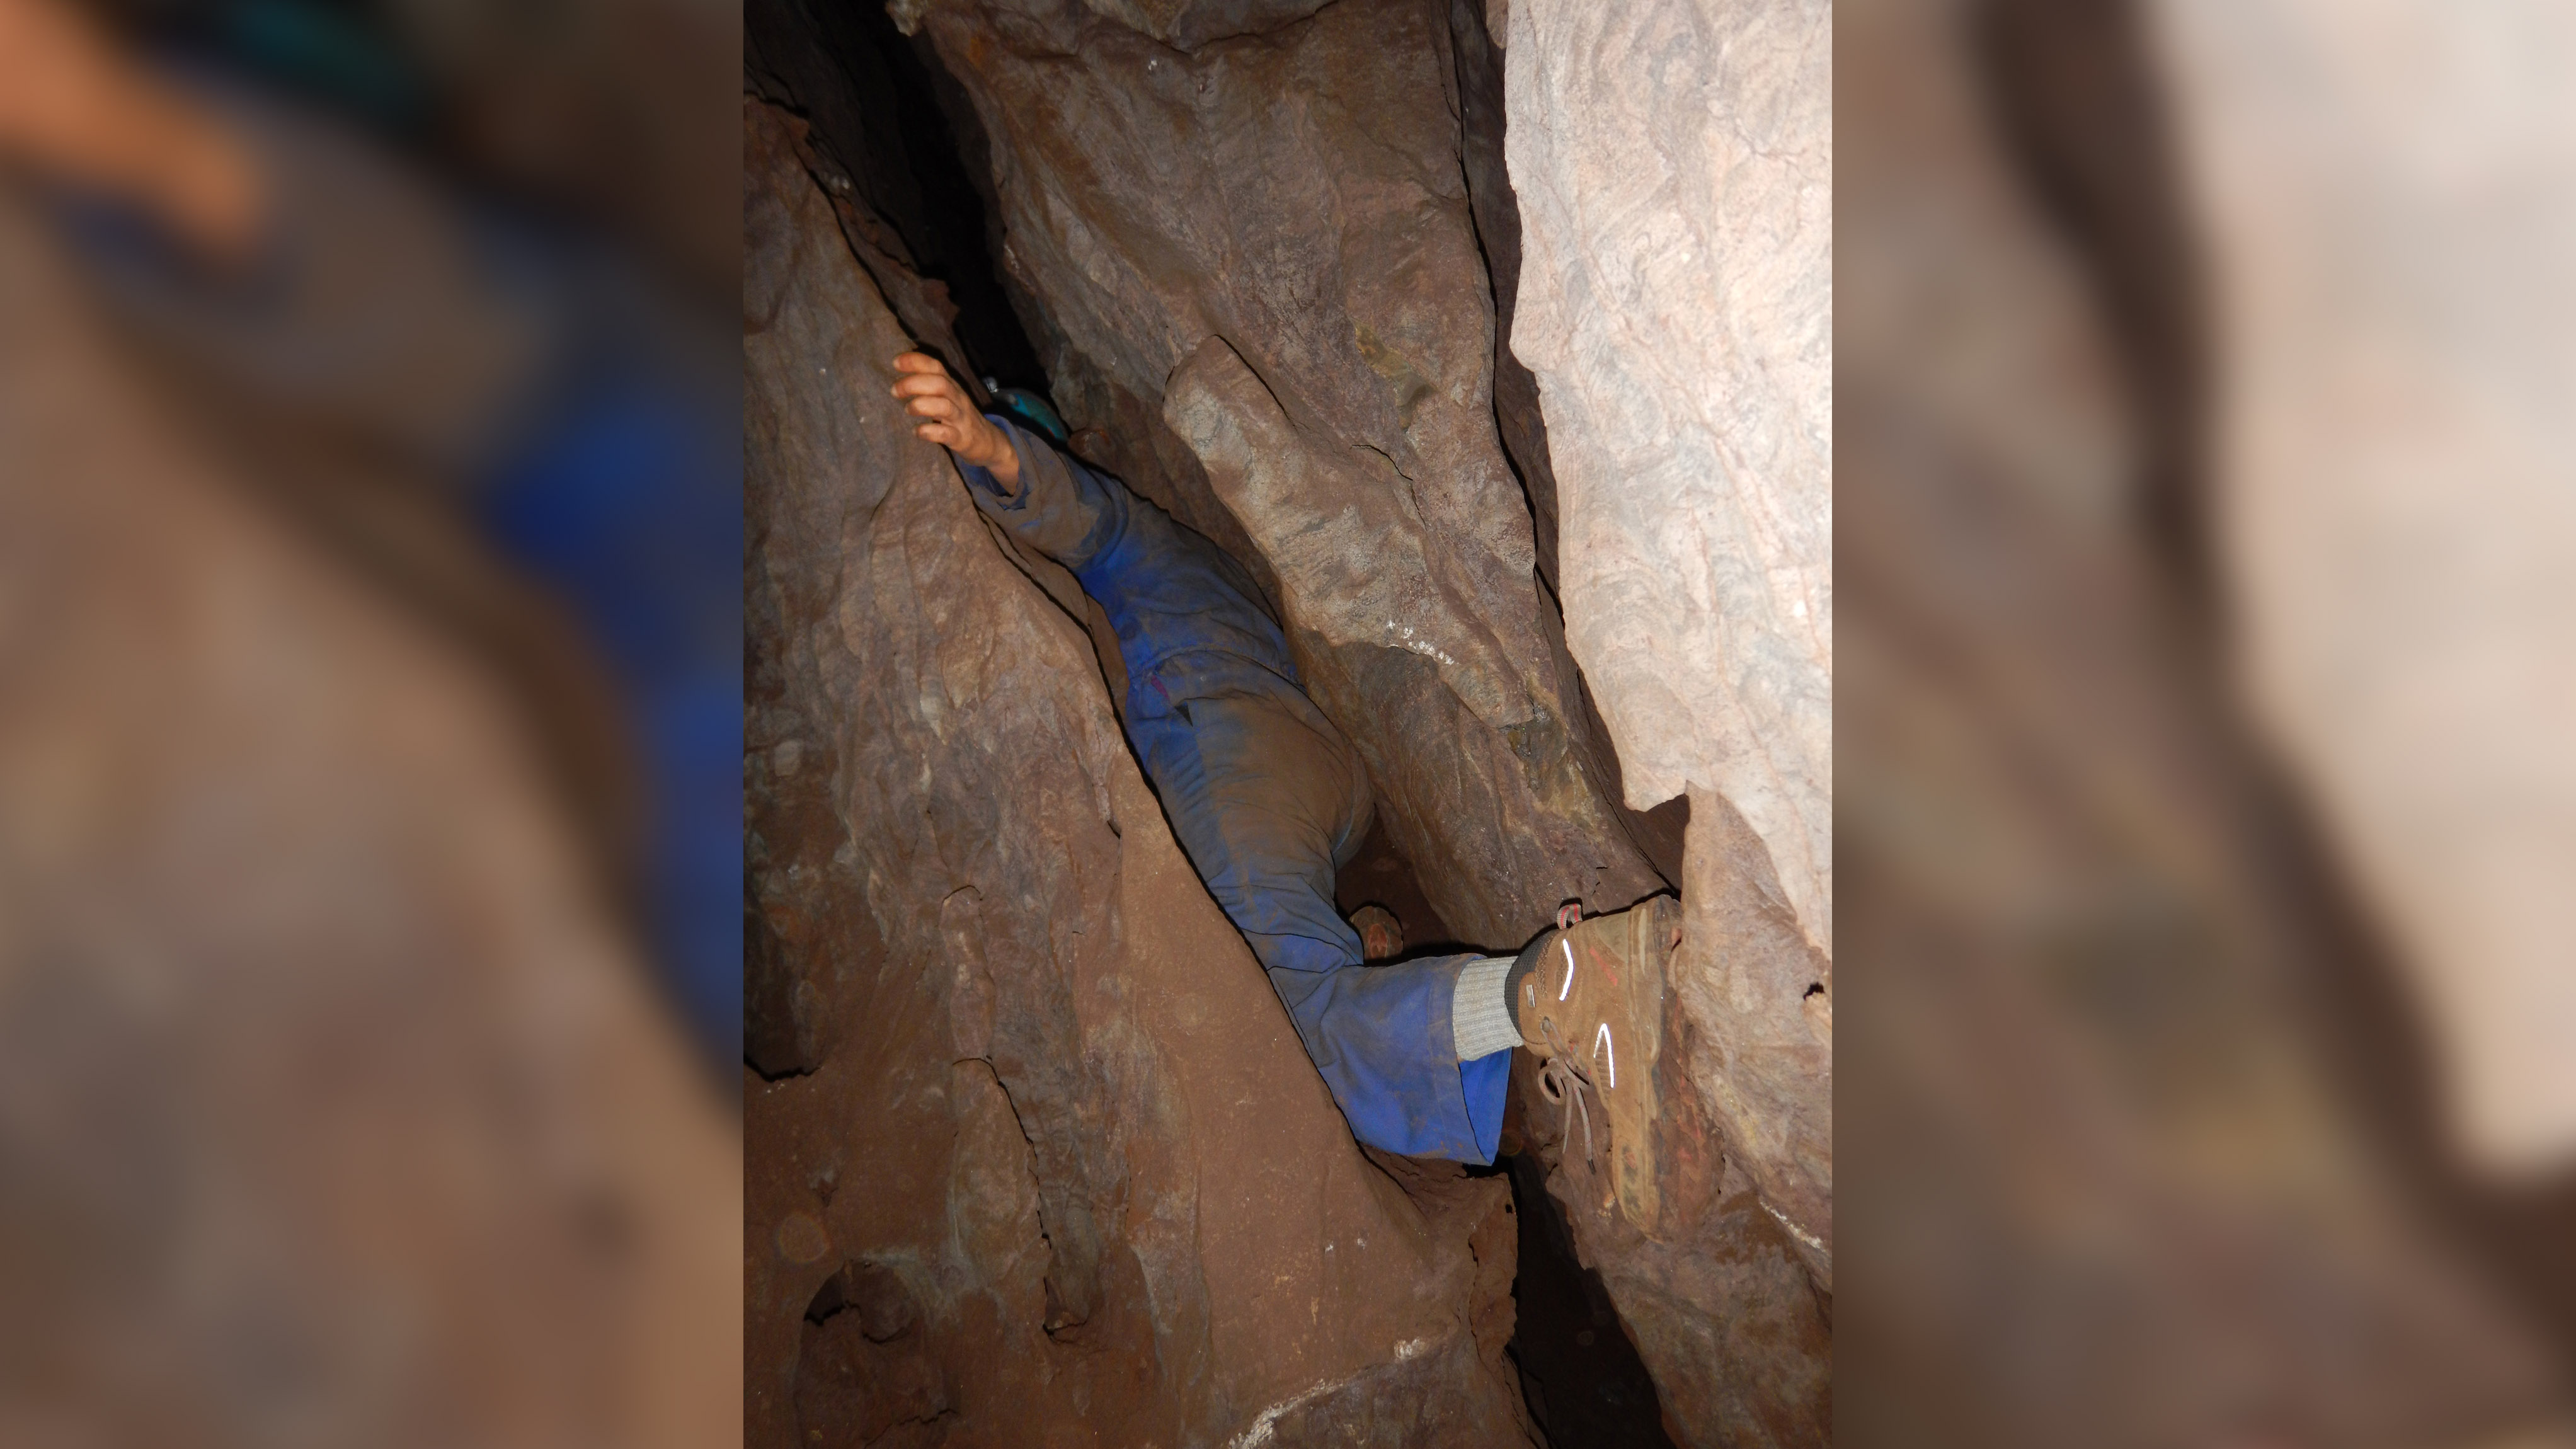 Mitglieder des Forschungsteams, die die Höhle erkundeten, mussten sich bei der Erkundung des Labyrinths der Gänge, in denen Leti gefunden wurde, durch kaum 15 cm breite Räume quetschen.